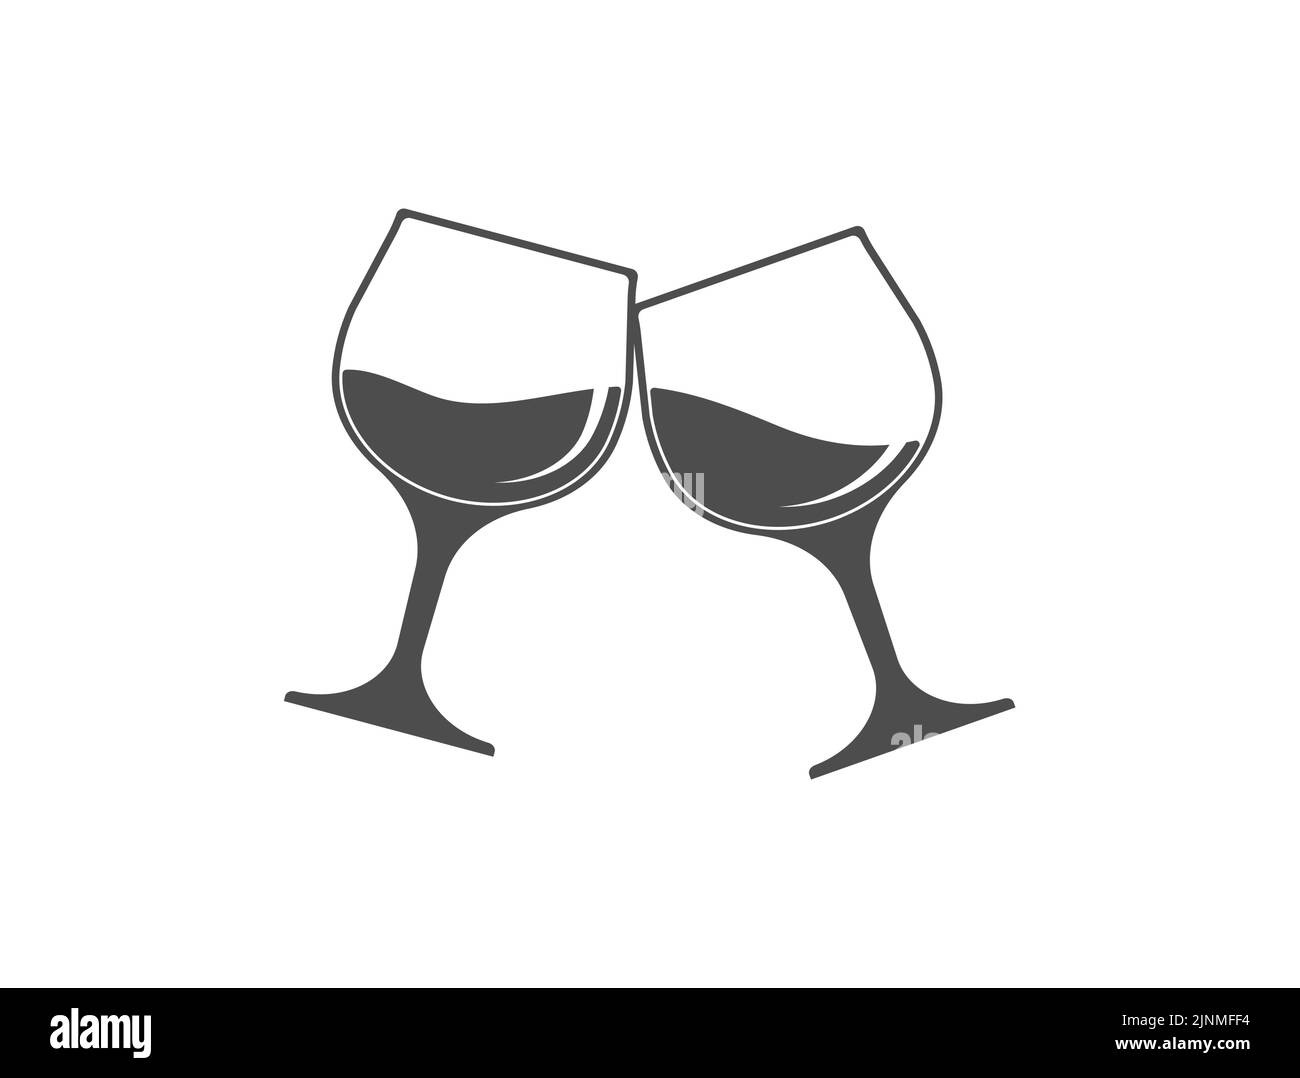 Zwei klirrende Gläser. Vorlage für ein Logo, einen Aufkleber, eine Marke oder ein Etikett. Symbol für Websites und Anwendungen. Flacher Style Stock Vektor